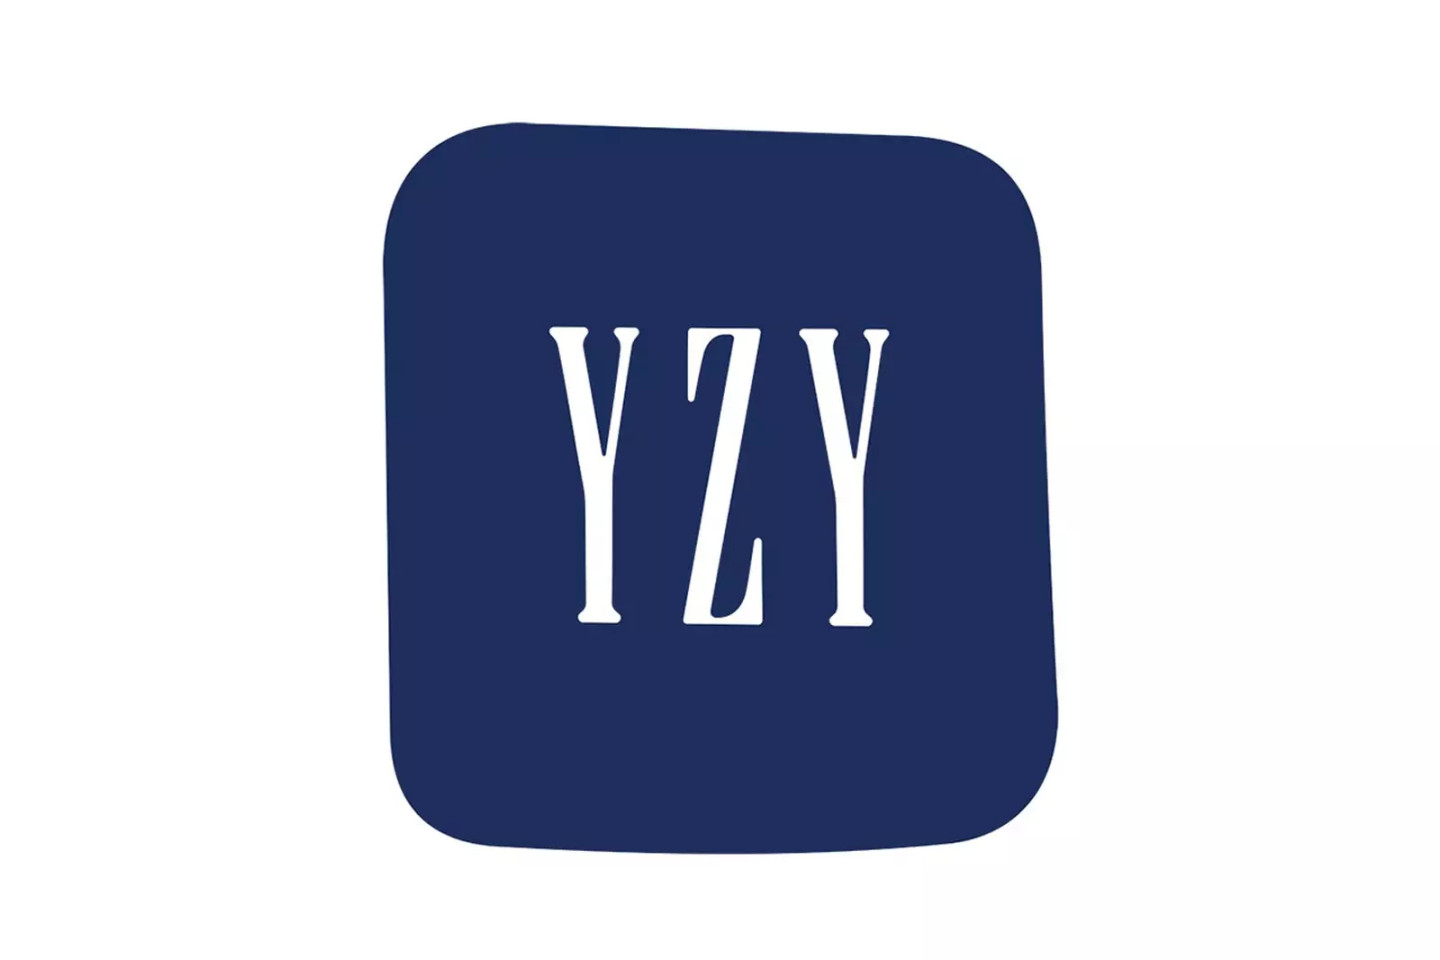 Совместный логотип Yeezy и Gap